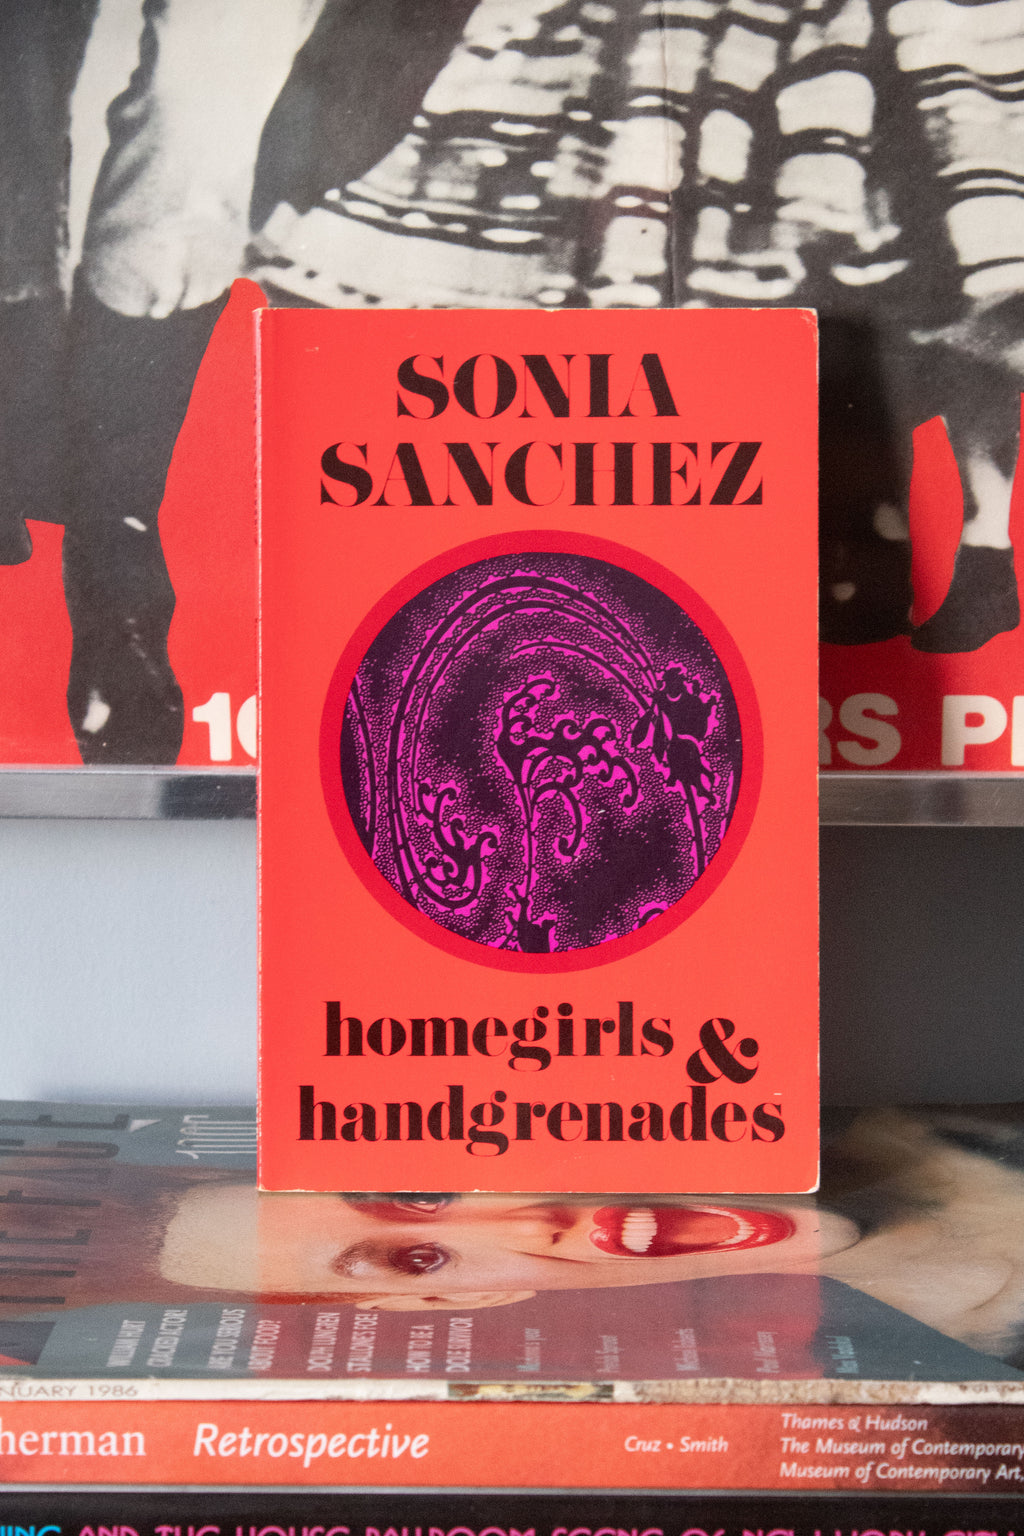 "Homegirls & Handgrenades" by Sonia Sanchesz (SIGNED)